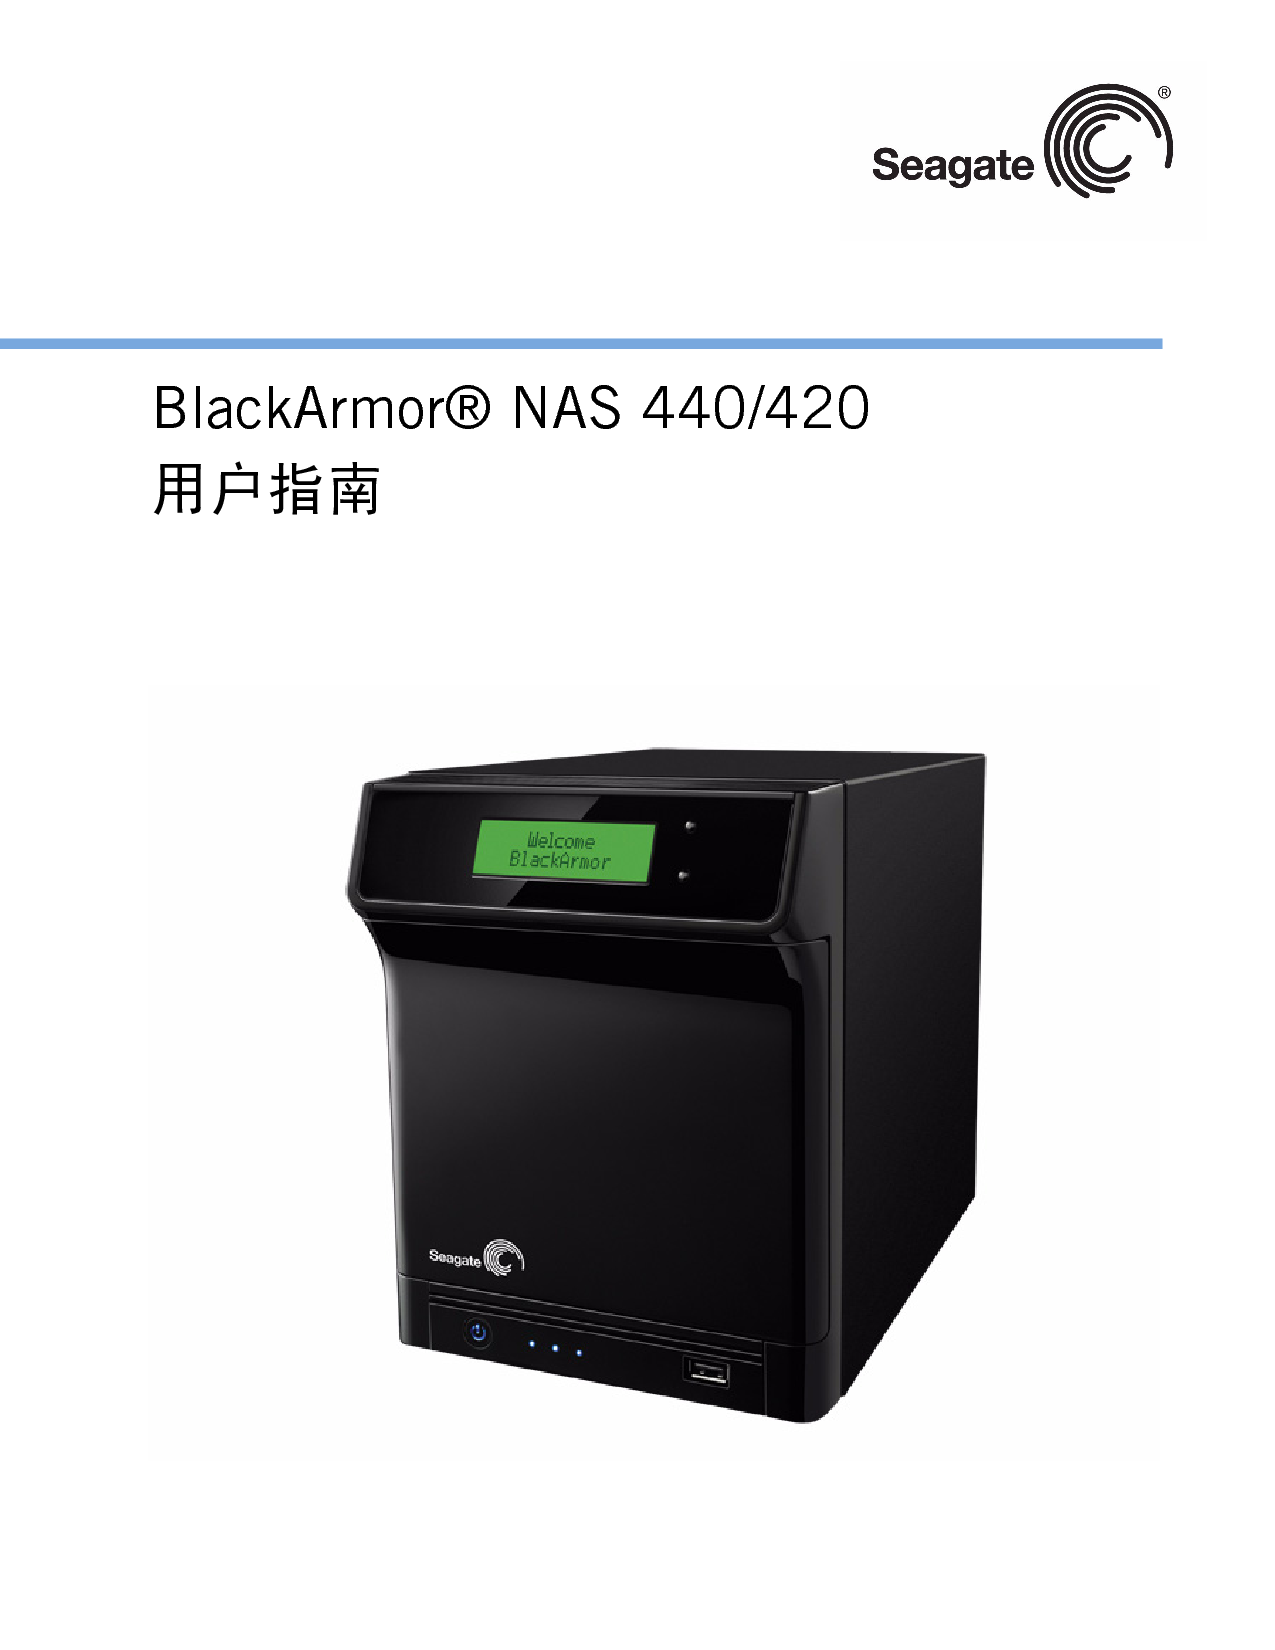 希捷 Seagate BlackArmor NAS 420 用户指南 封面